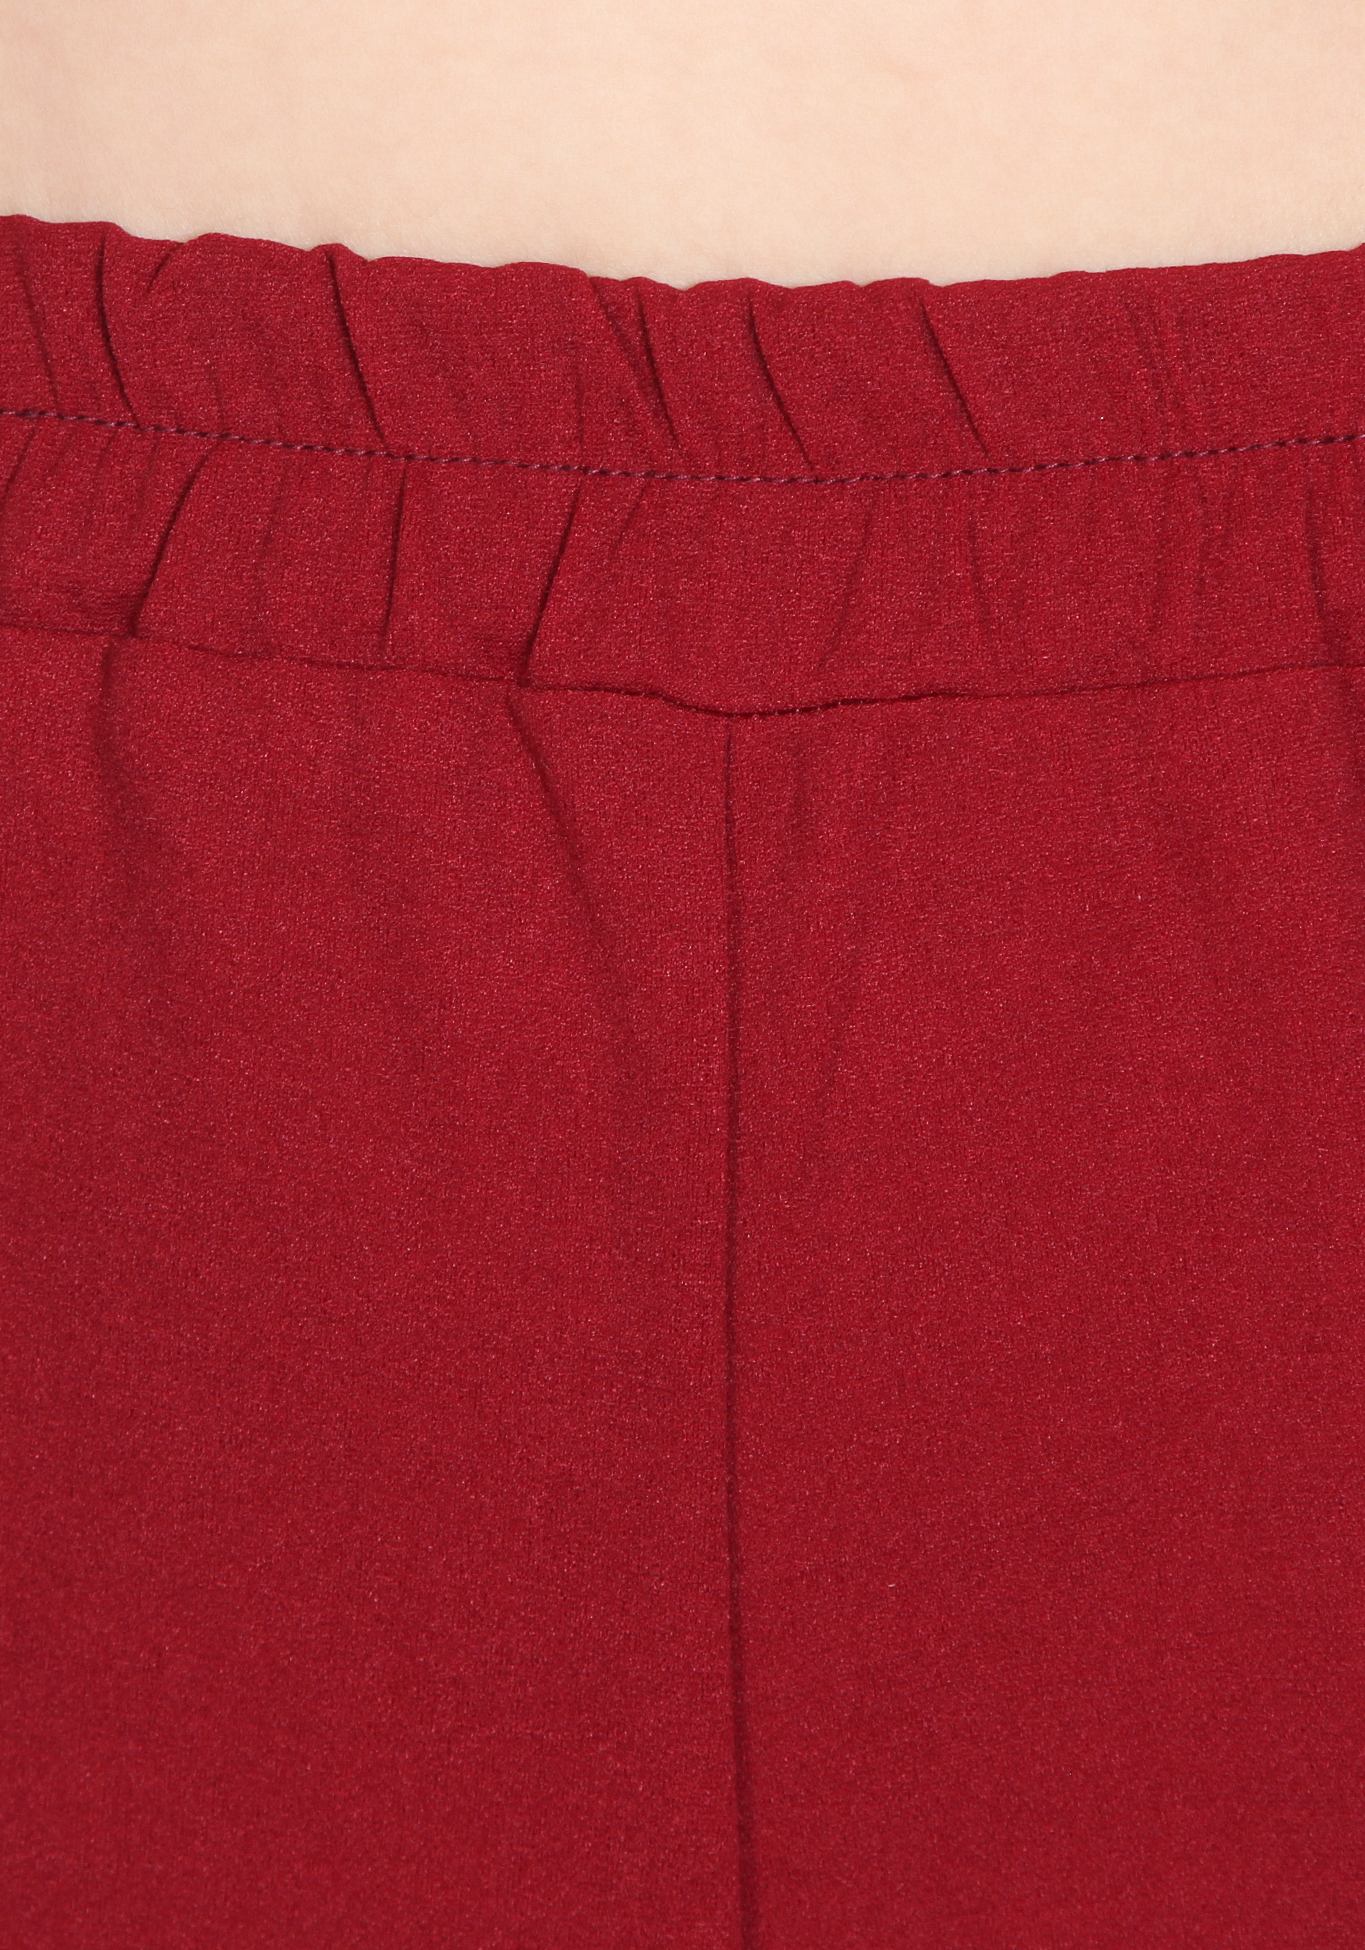 Костюм "Эмануэль", размер 64, цвет красный фантазийная - фото 9